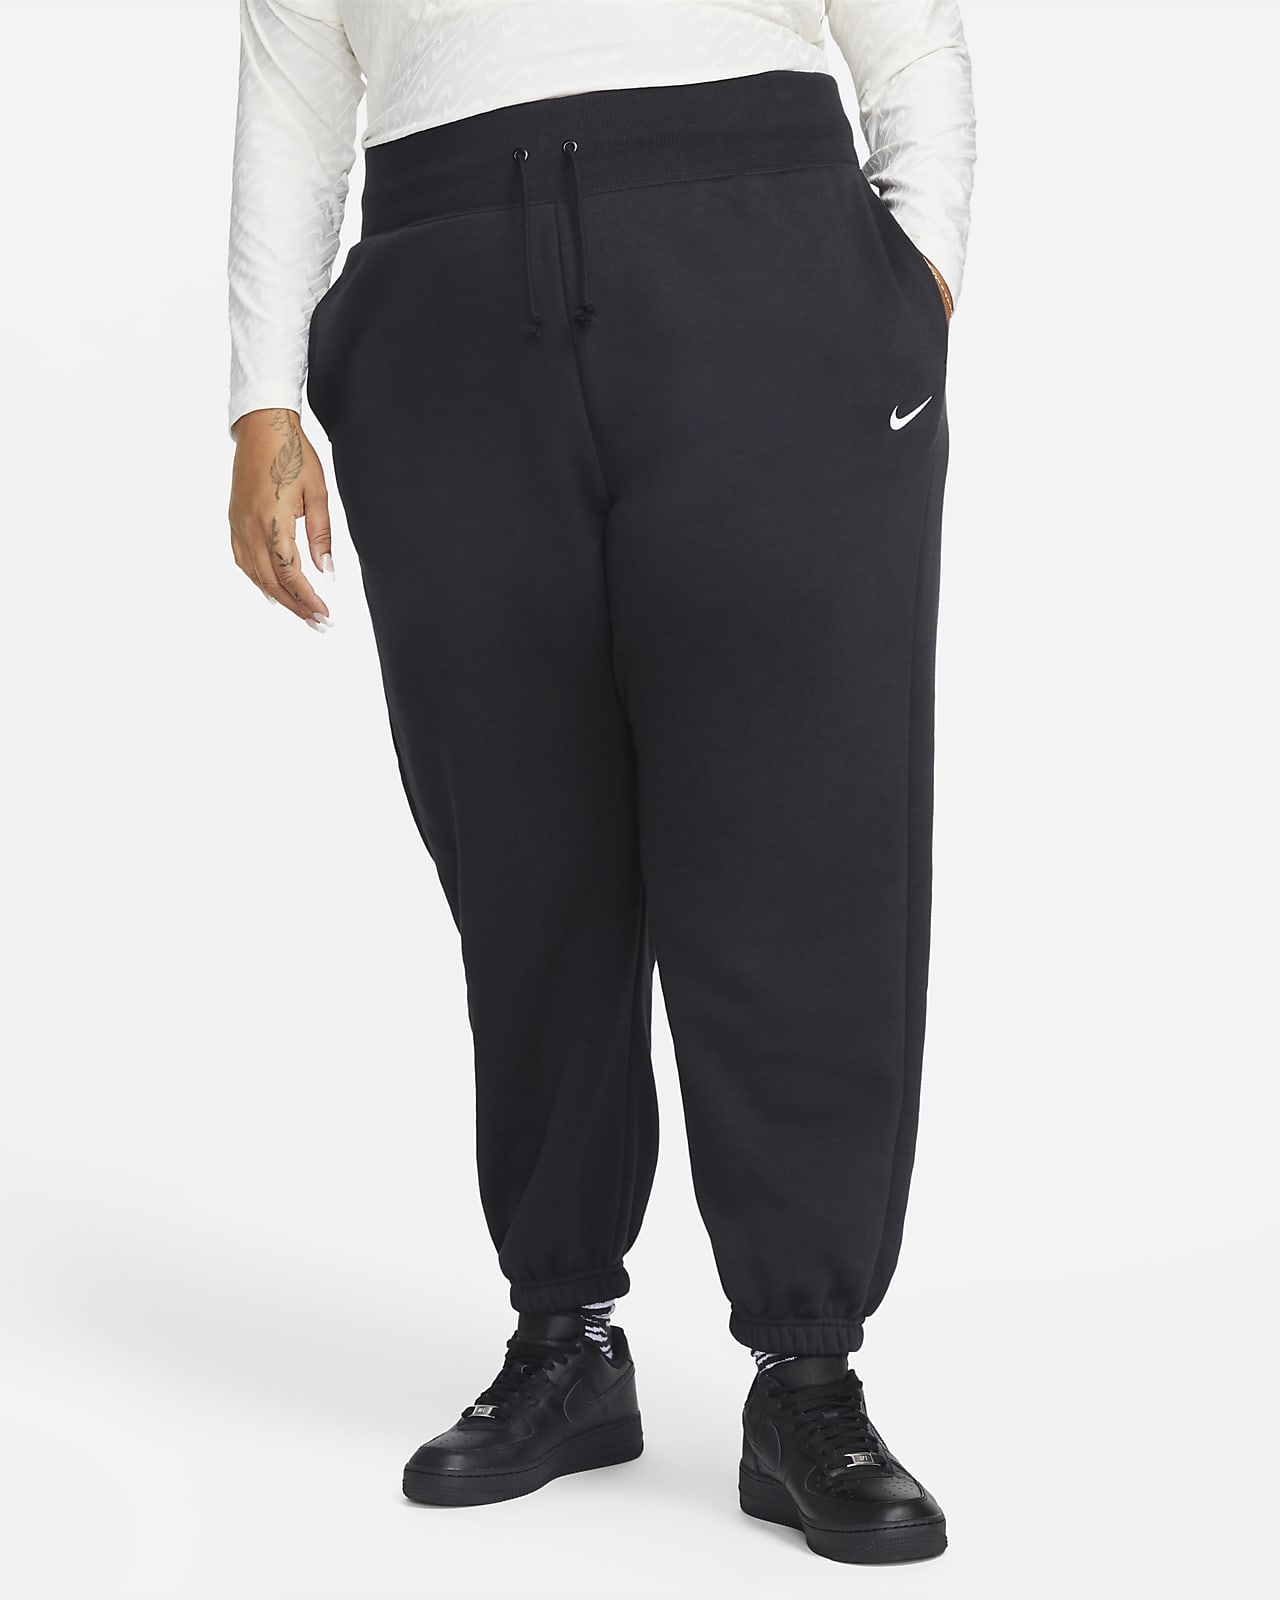 Pants de entrenamiento oversized de cintura alta para mujer (talla grande) Nike Sportswear Phoenix Fleece